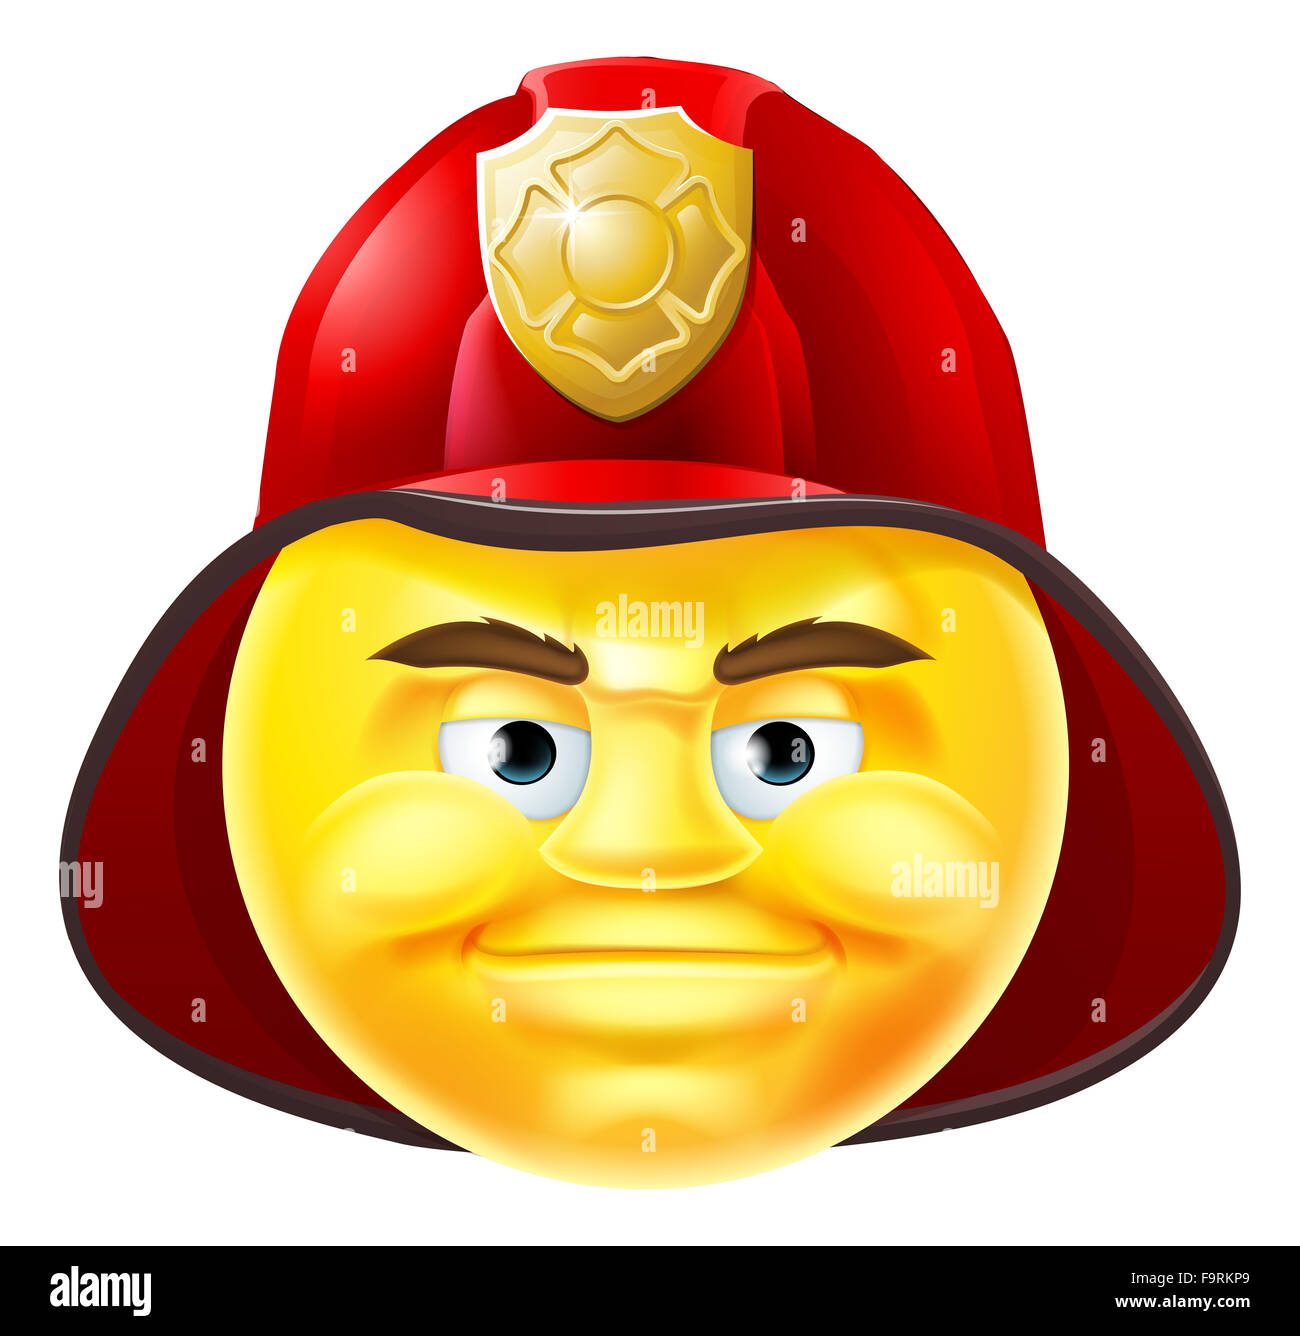 Ein Feuerwehrmann Emoji Emoticon Smiley Gesicht Zeichentrickfigur in einem roten Helm Stockfoto